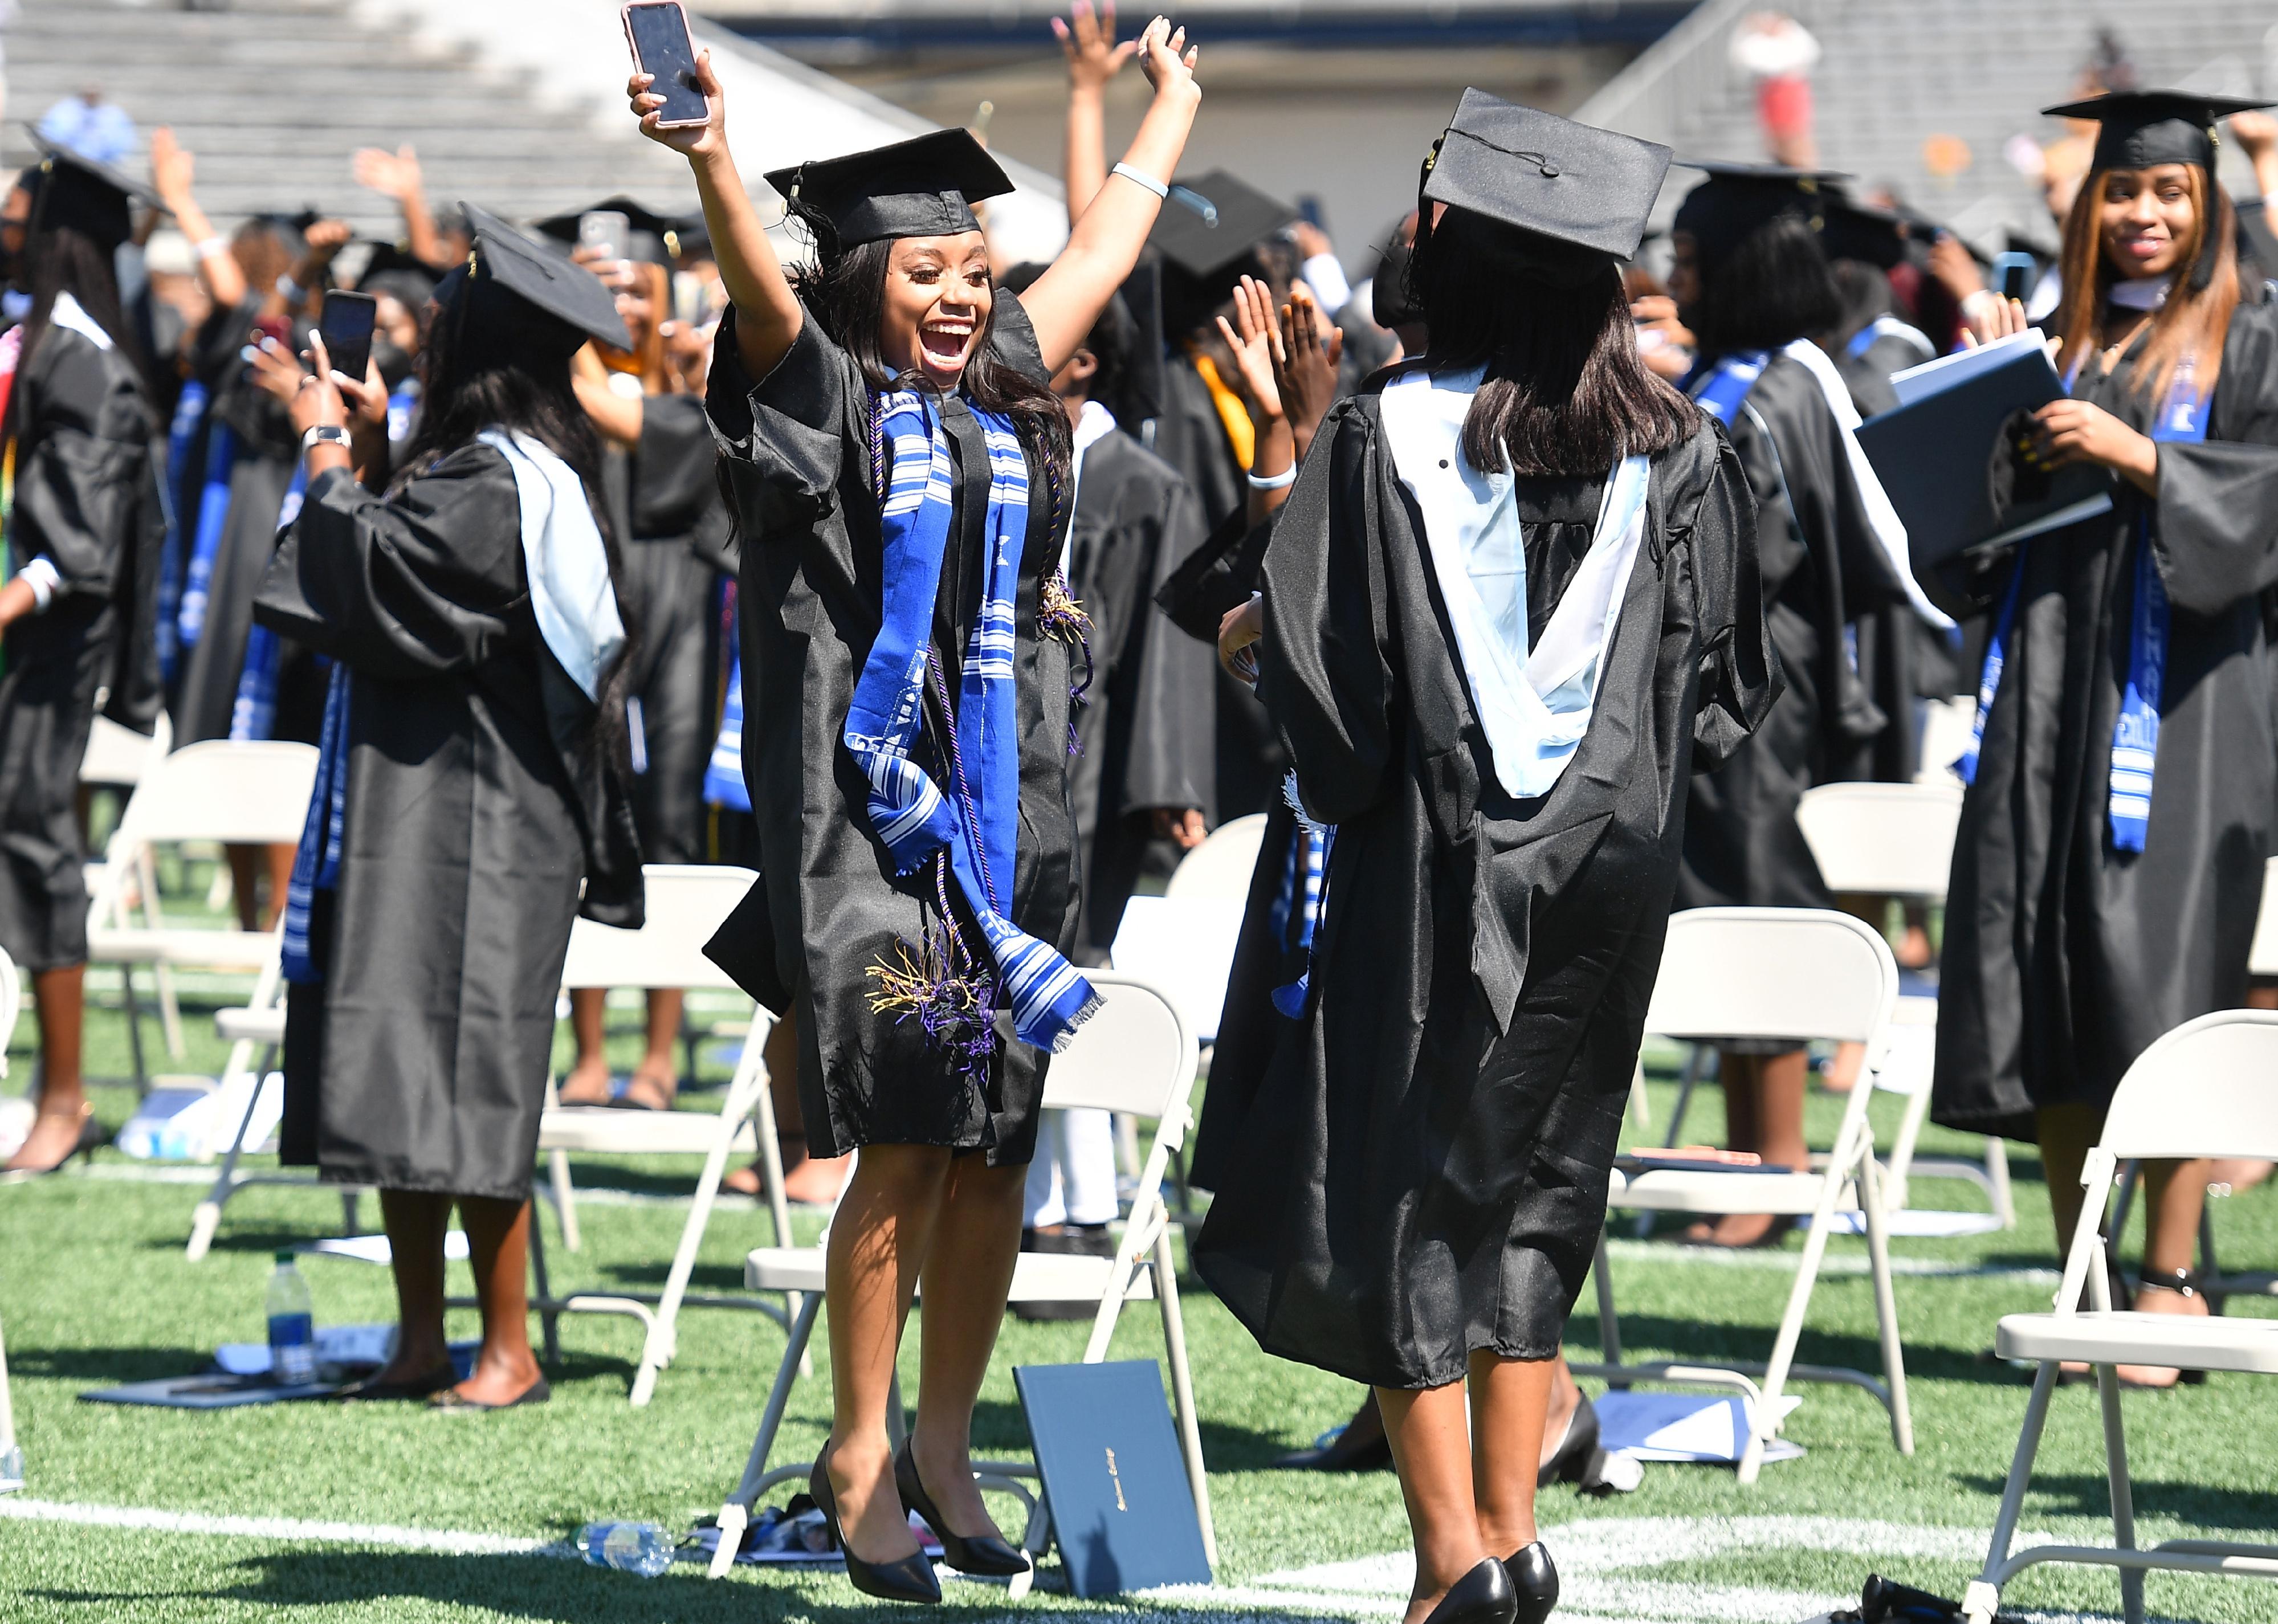 Spelman graduates celebrating during College Commencement in Atlanta, Georgia